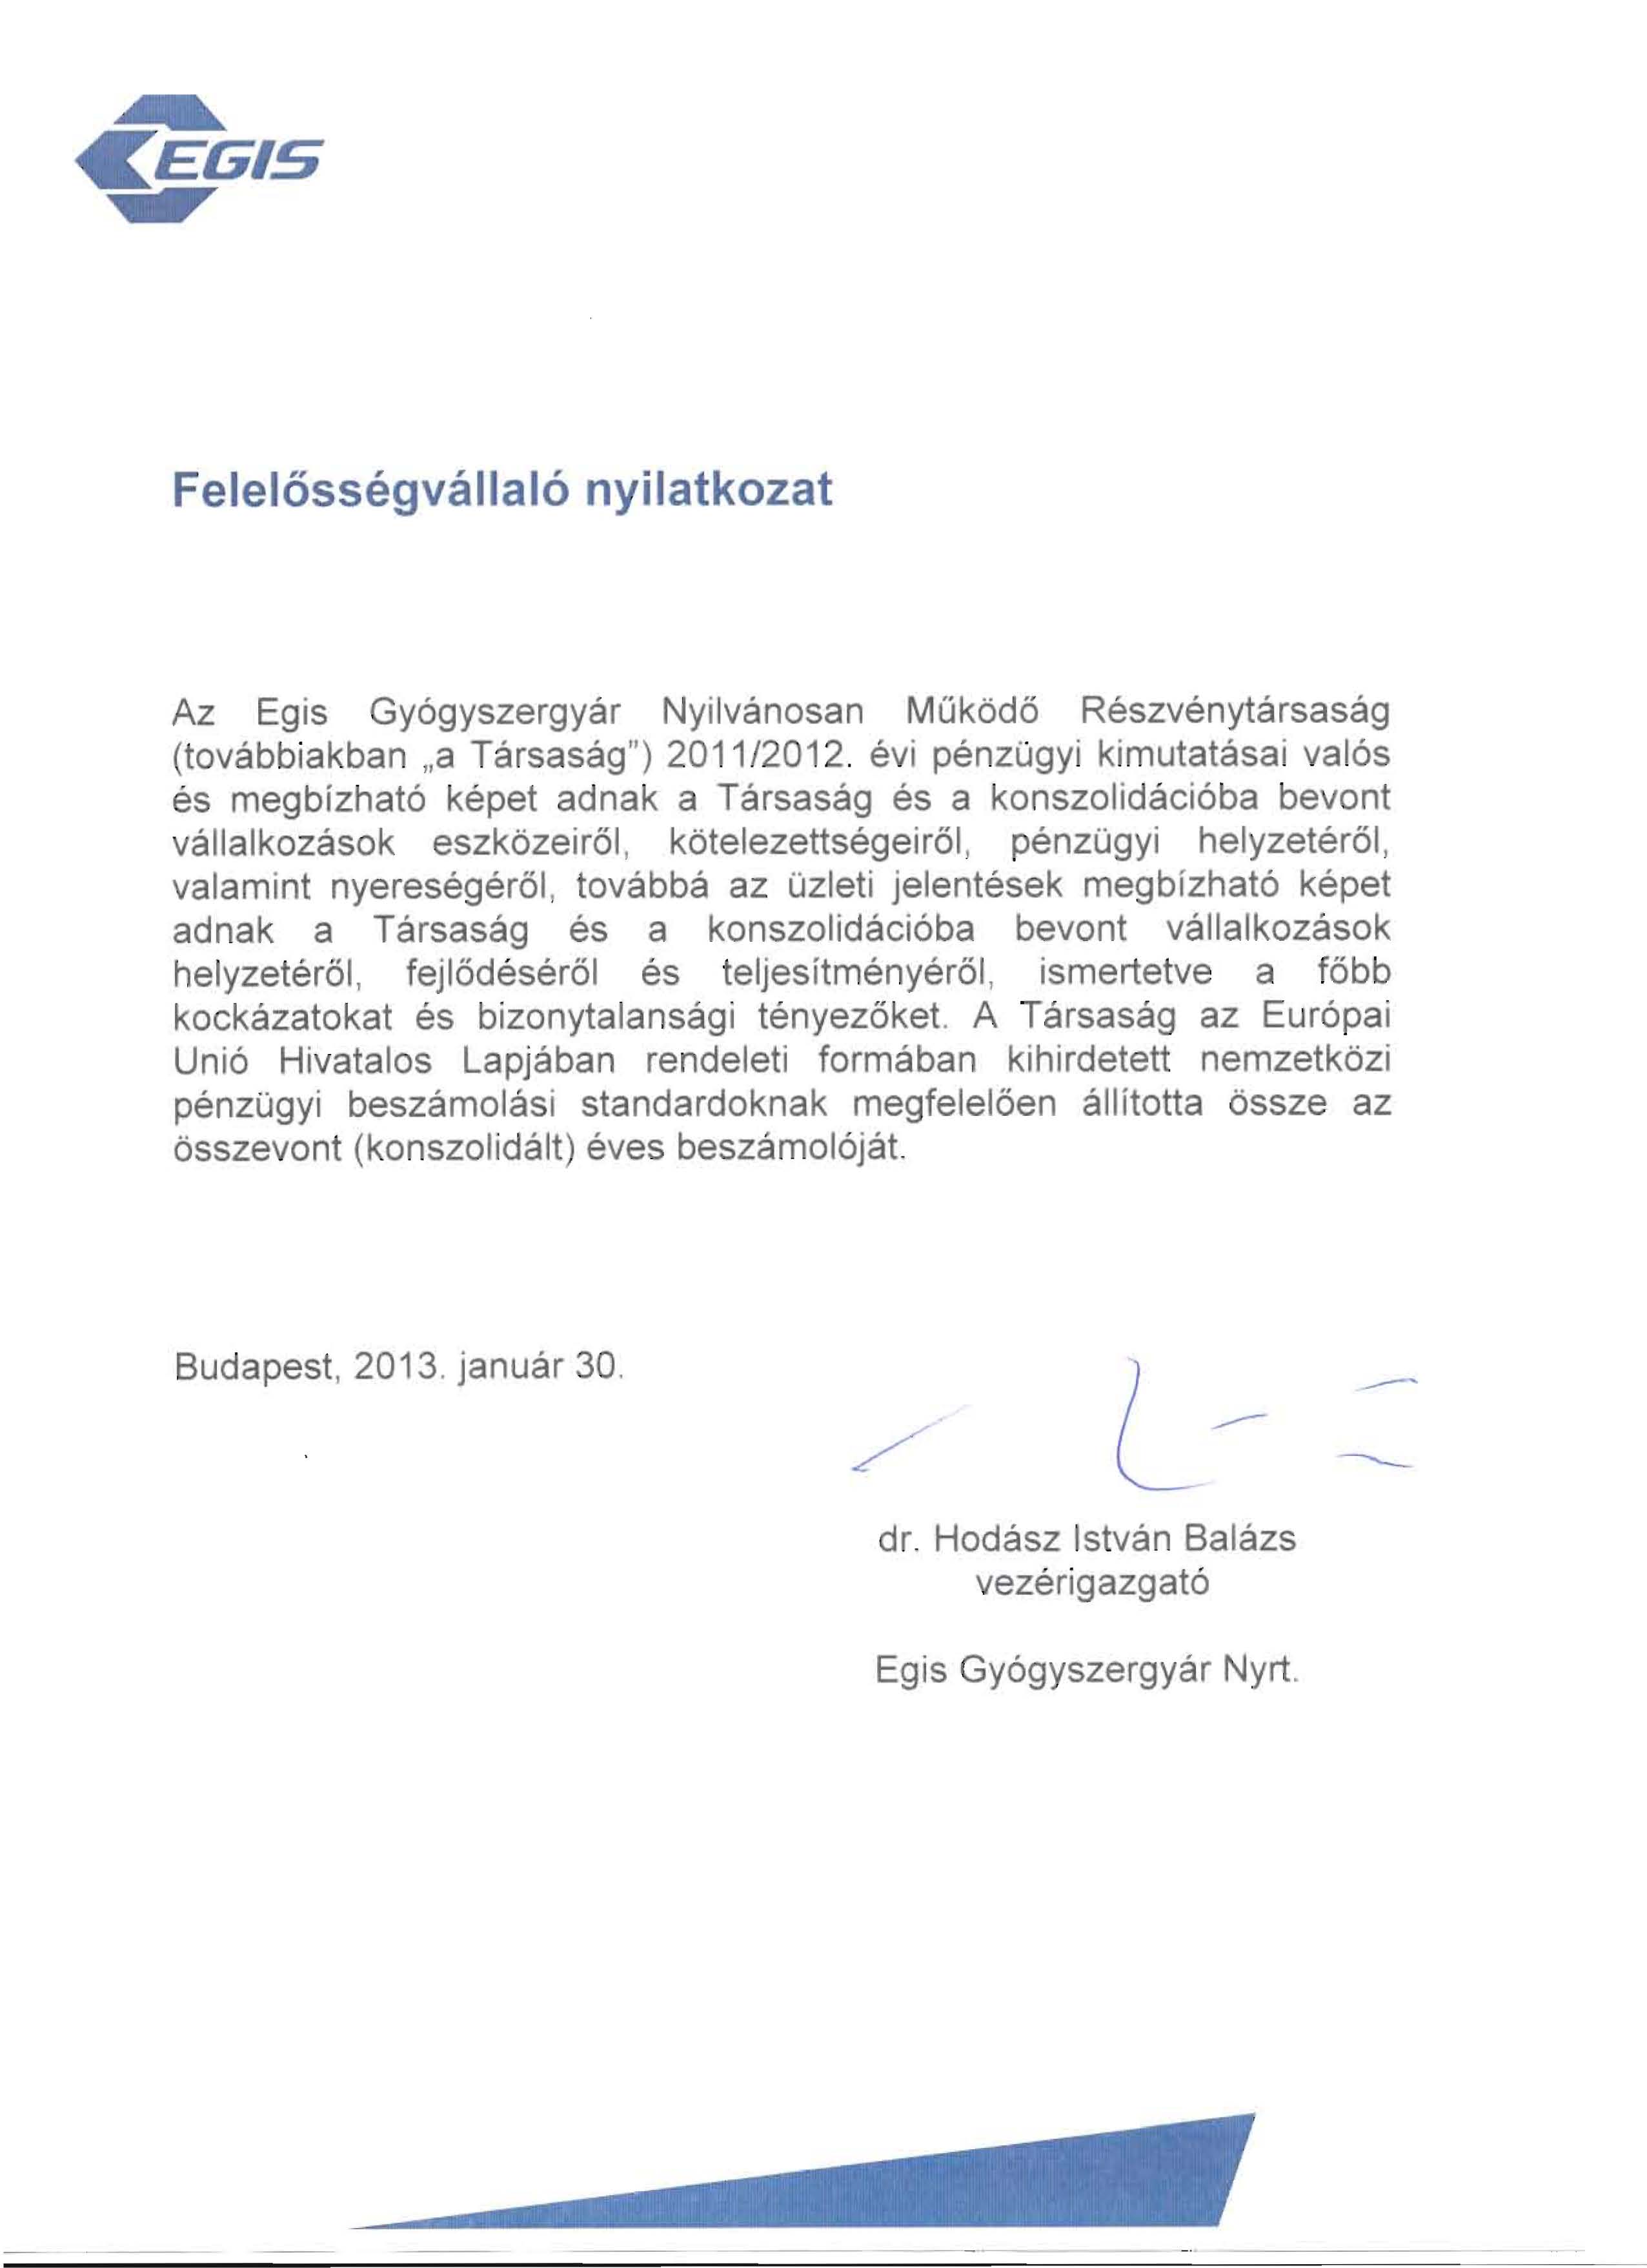 Felelc5ssegvallal6 nyilatkozat Az Egis Gy6gyszergyar Nyilvanosan MOkod6 Reszvenytarsasag (tovabbiakban "a Tarsasag") 2011/2012.